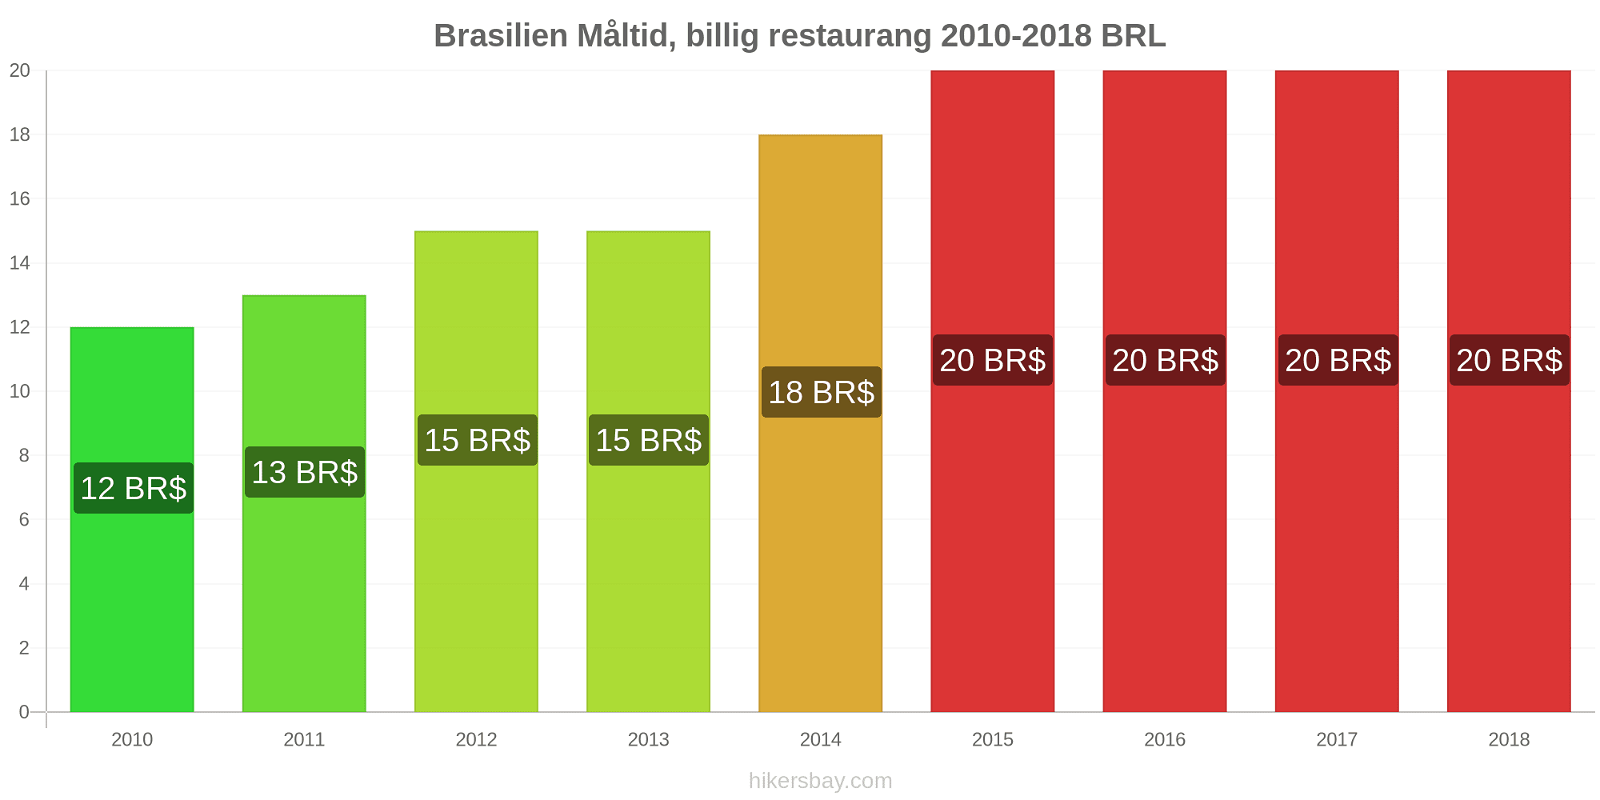 Brasilien prisändringar Måltid i en billig restaurang hikersbay.com